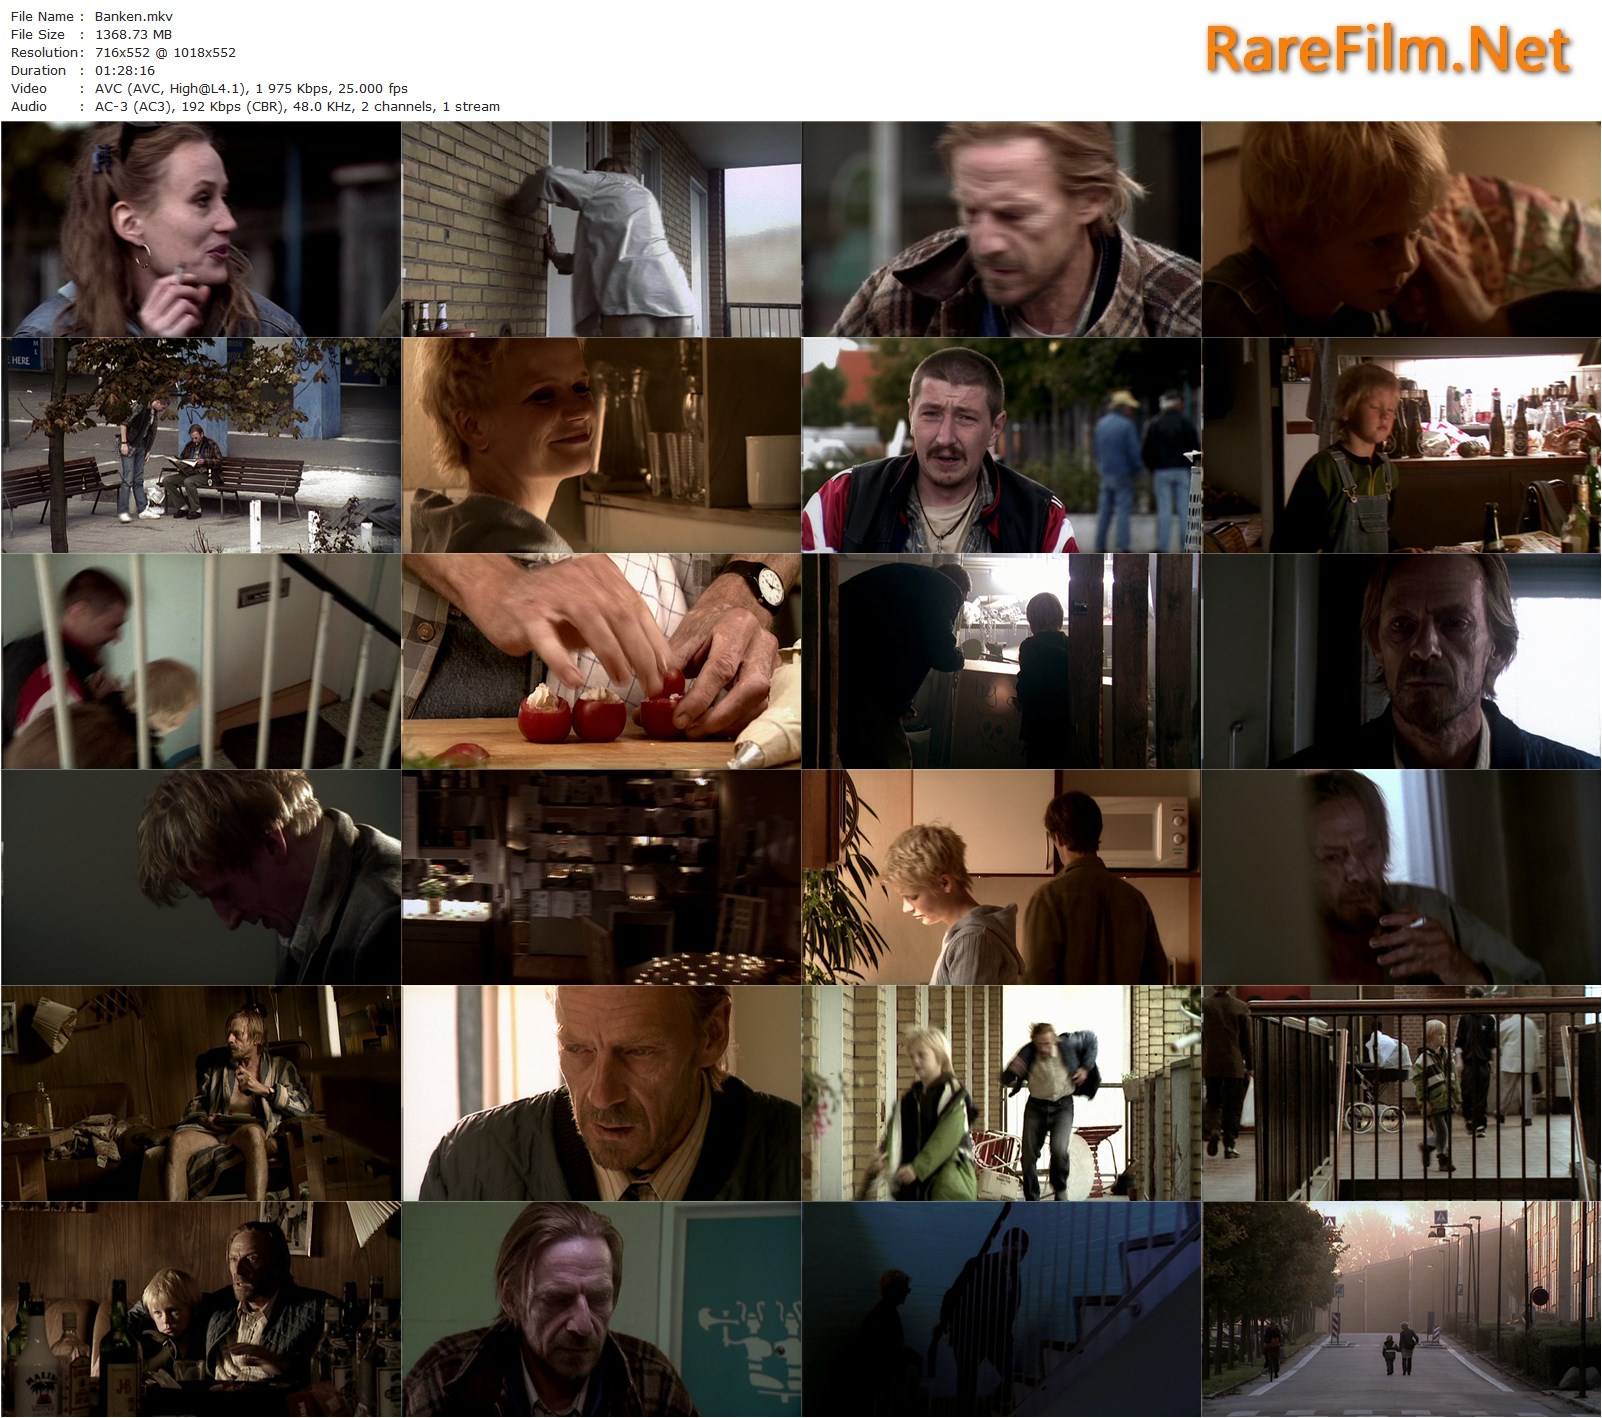 The Bench Fly, Christensen, Marius Sonne Janischefska, Stine Holm Joensen | RareFilm